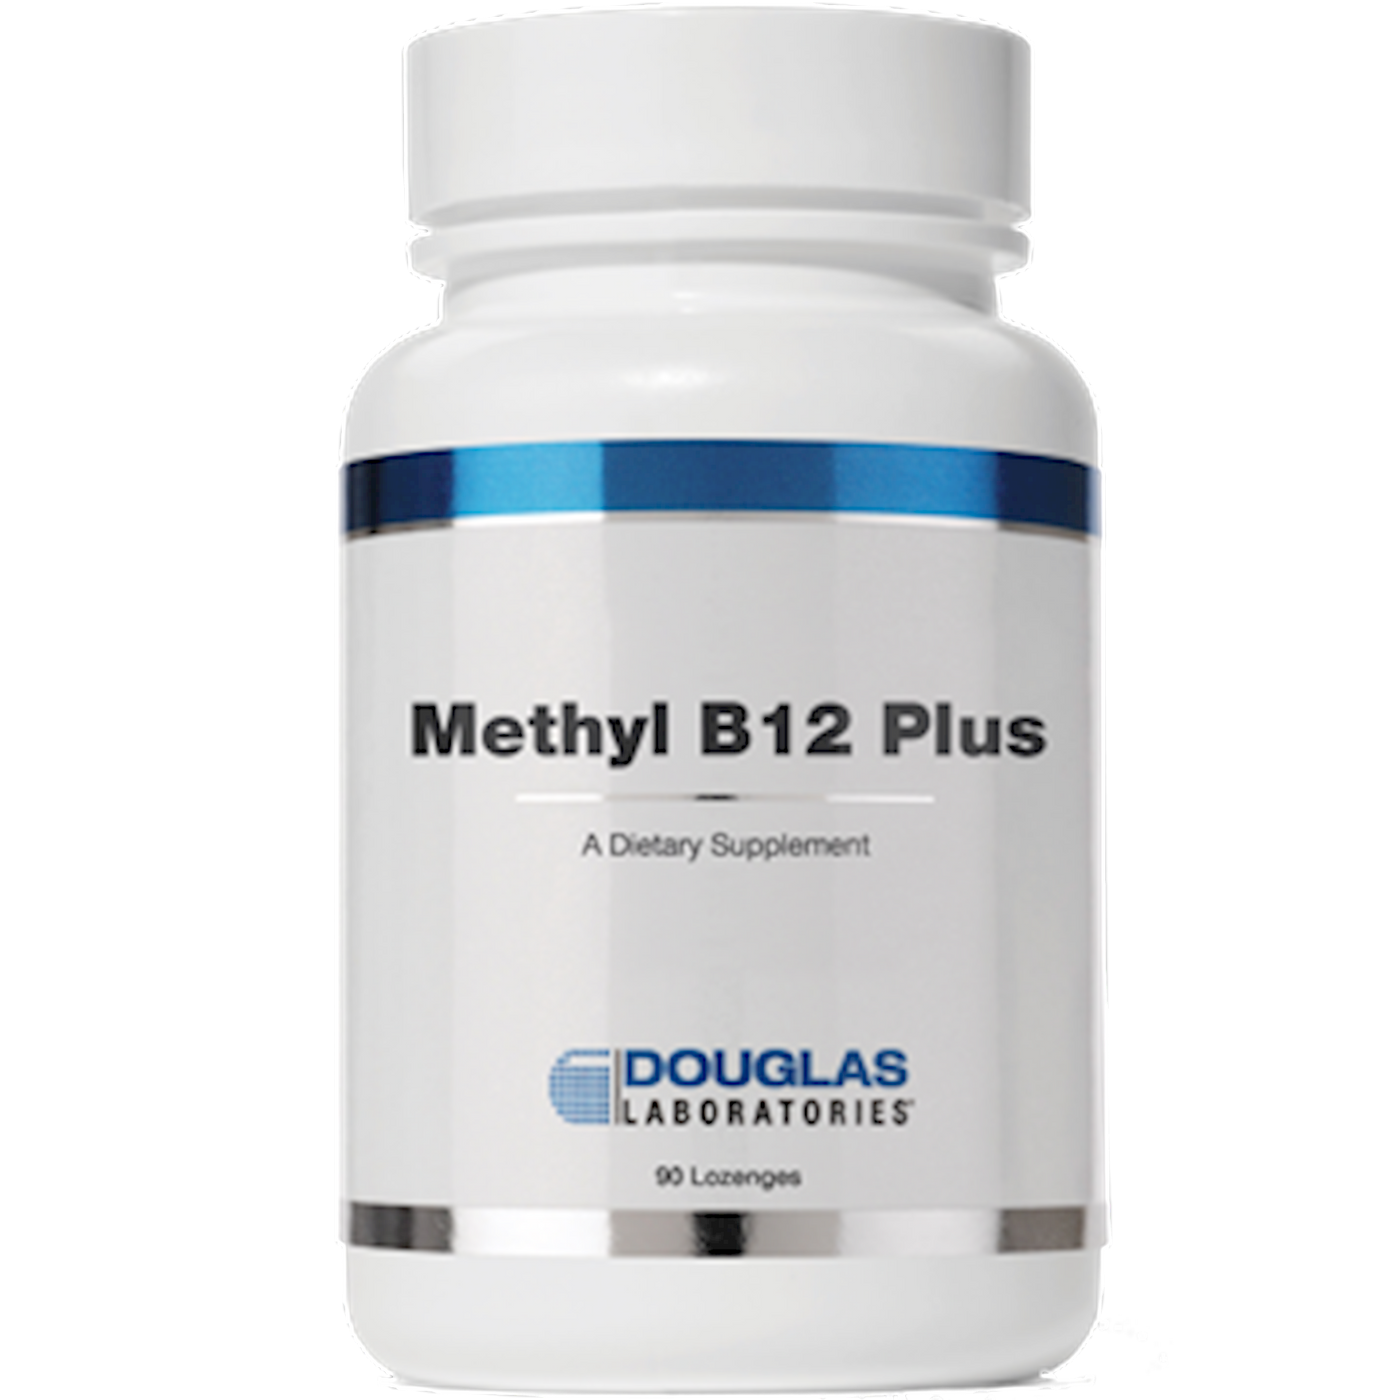 Methyl B12 Plus enges Curated Wellness